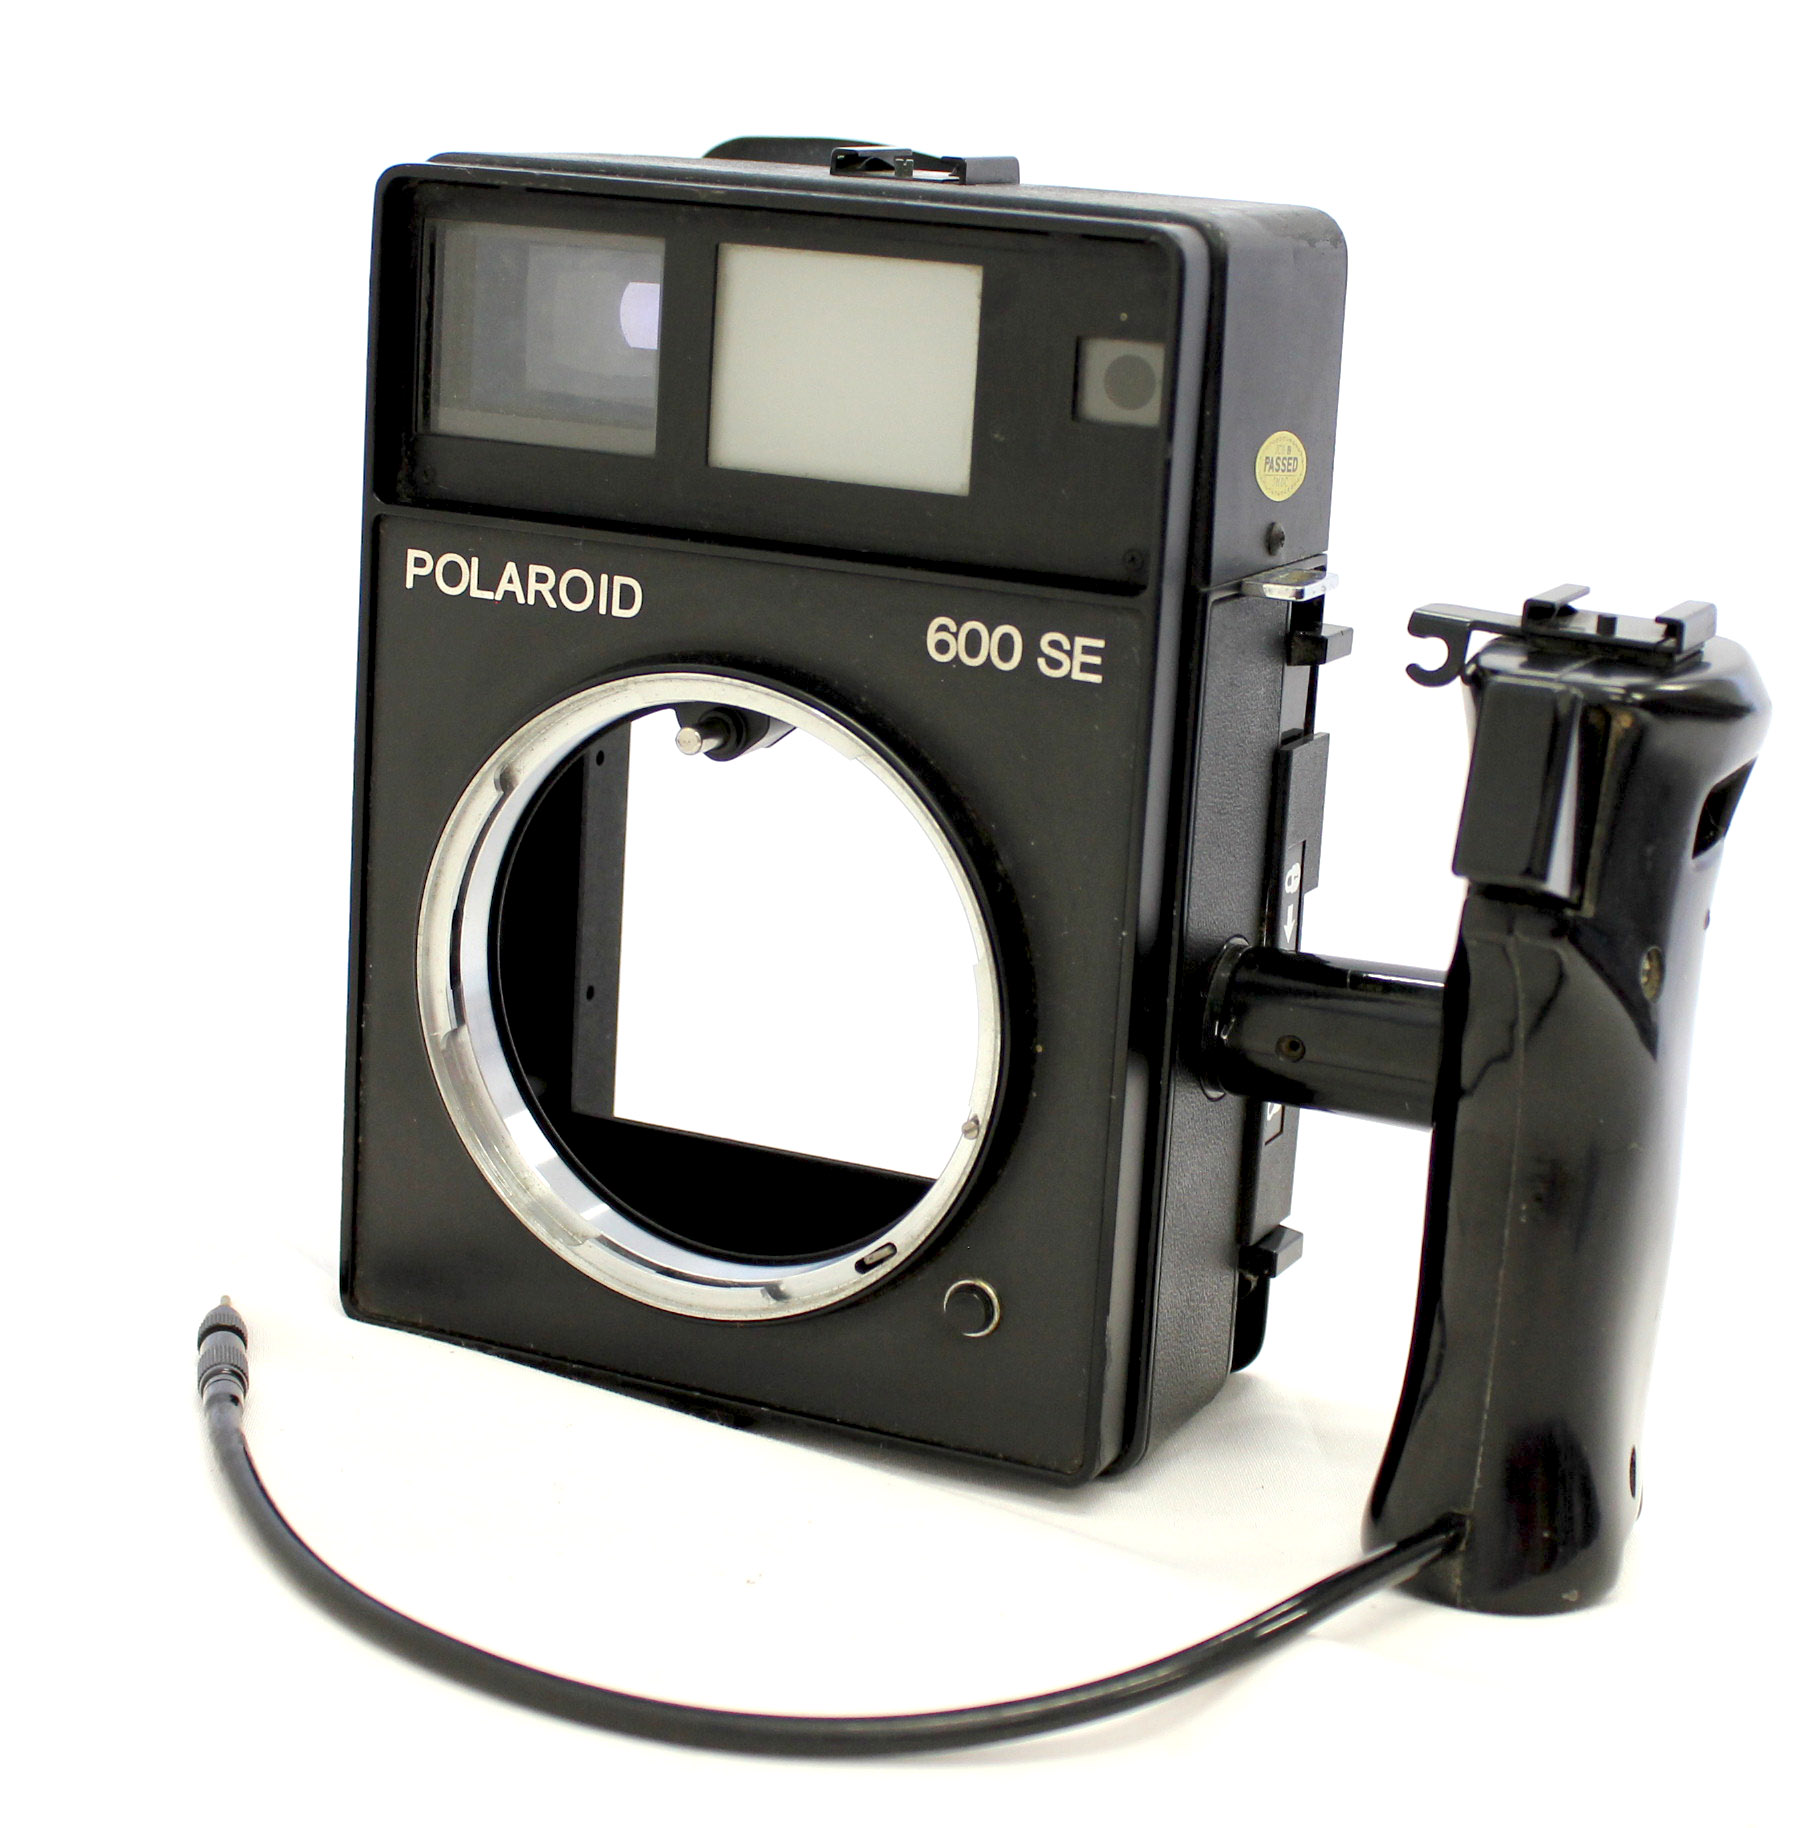  Polaroid 600 SE Instant Camera w/ Mamiya 127mm F/4.7 Lens and Polaroid Back from Japan Photo 1